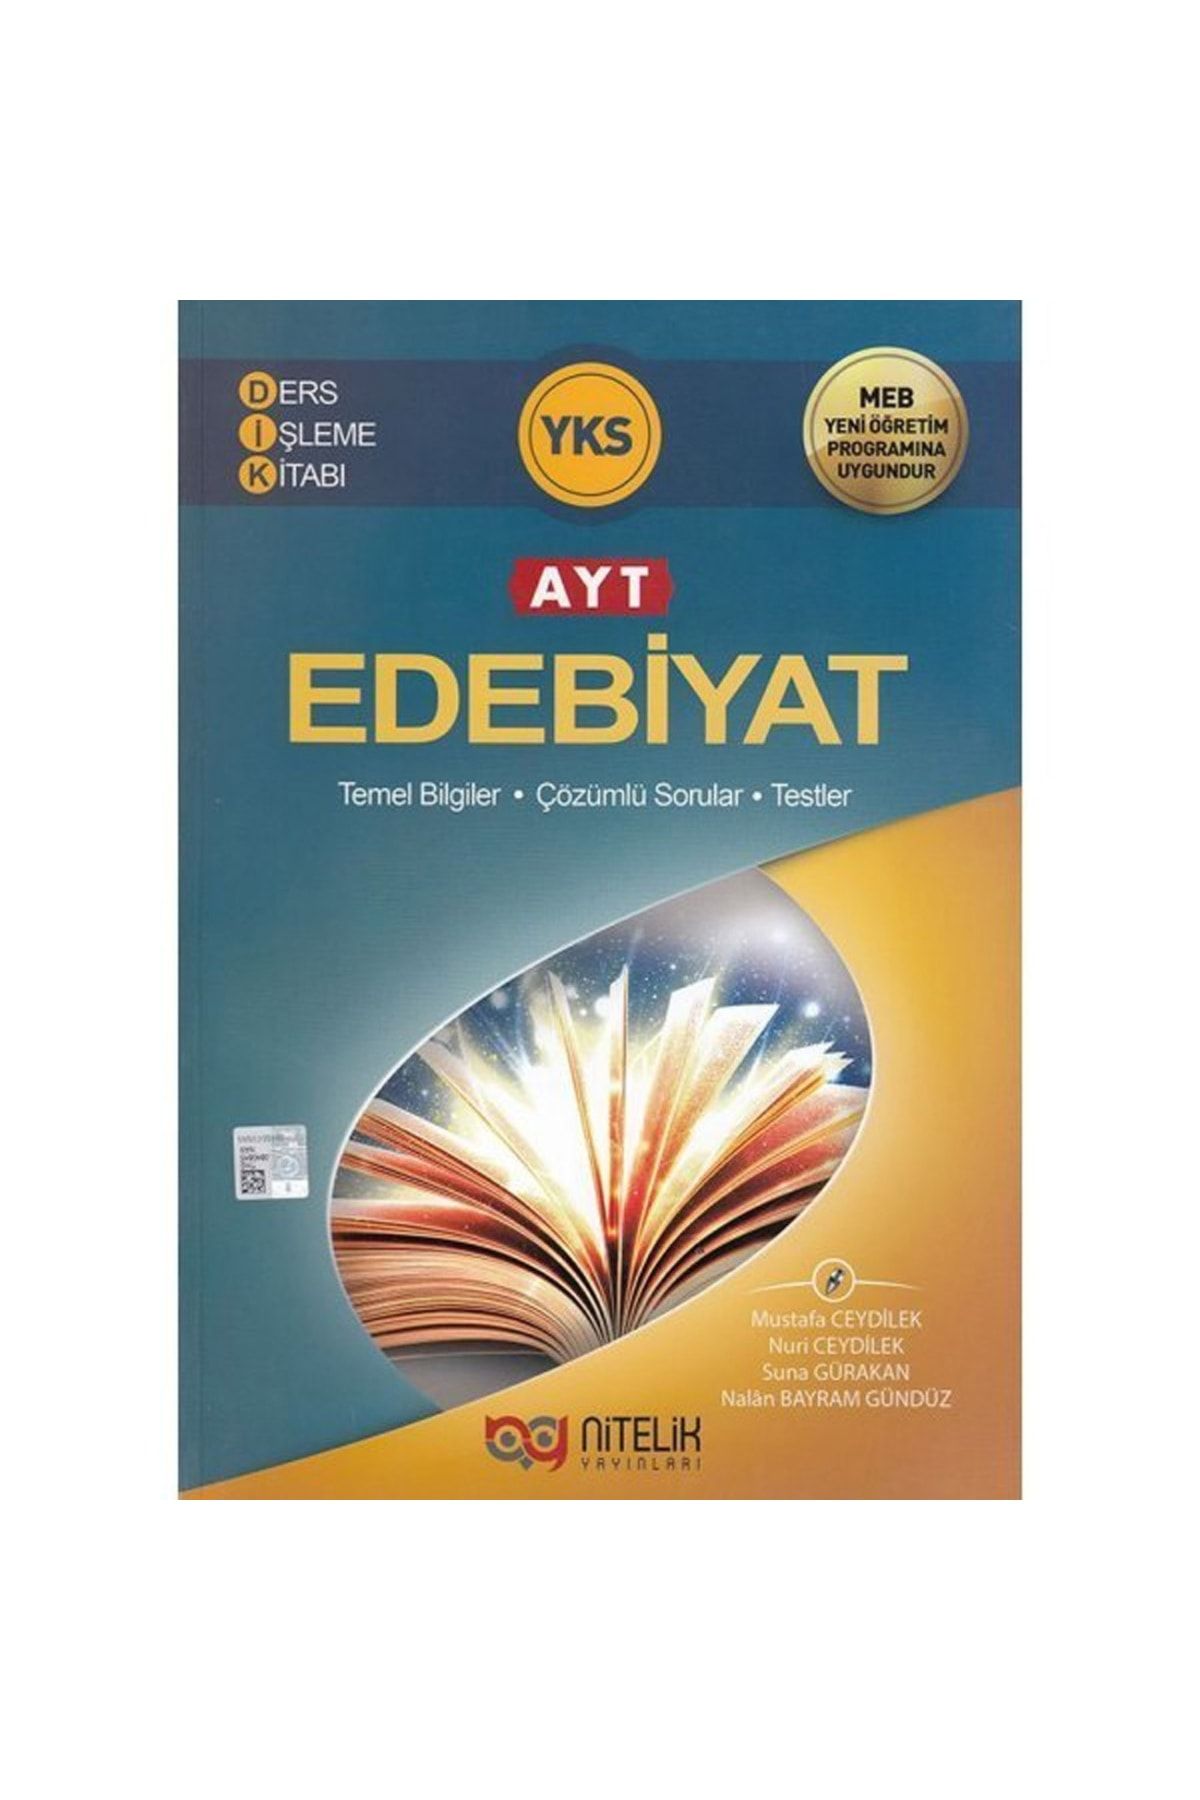 Nitelik Yayınları Yks Ayt Edebiyat Ders Işleme Kitabı *yeni* 2019 ( Nuri Ceydilek, Mustafa Ceydilek )